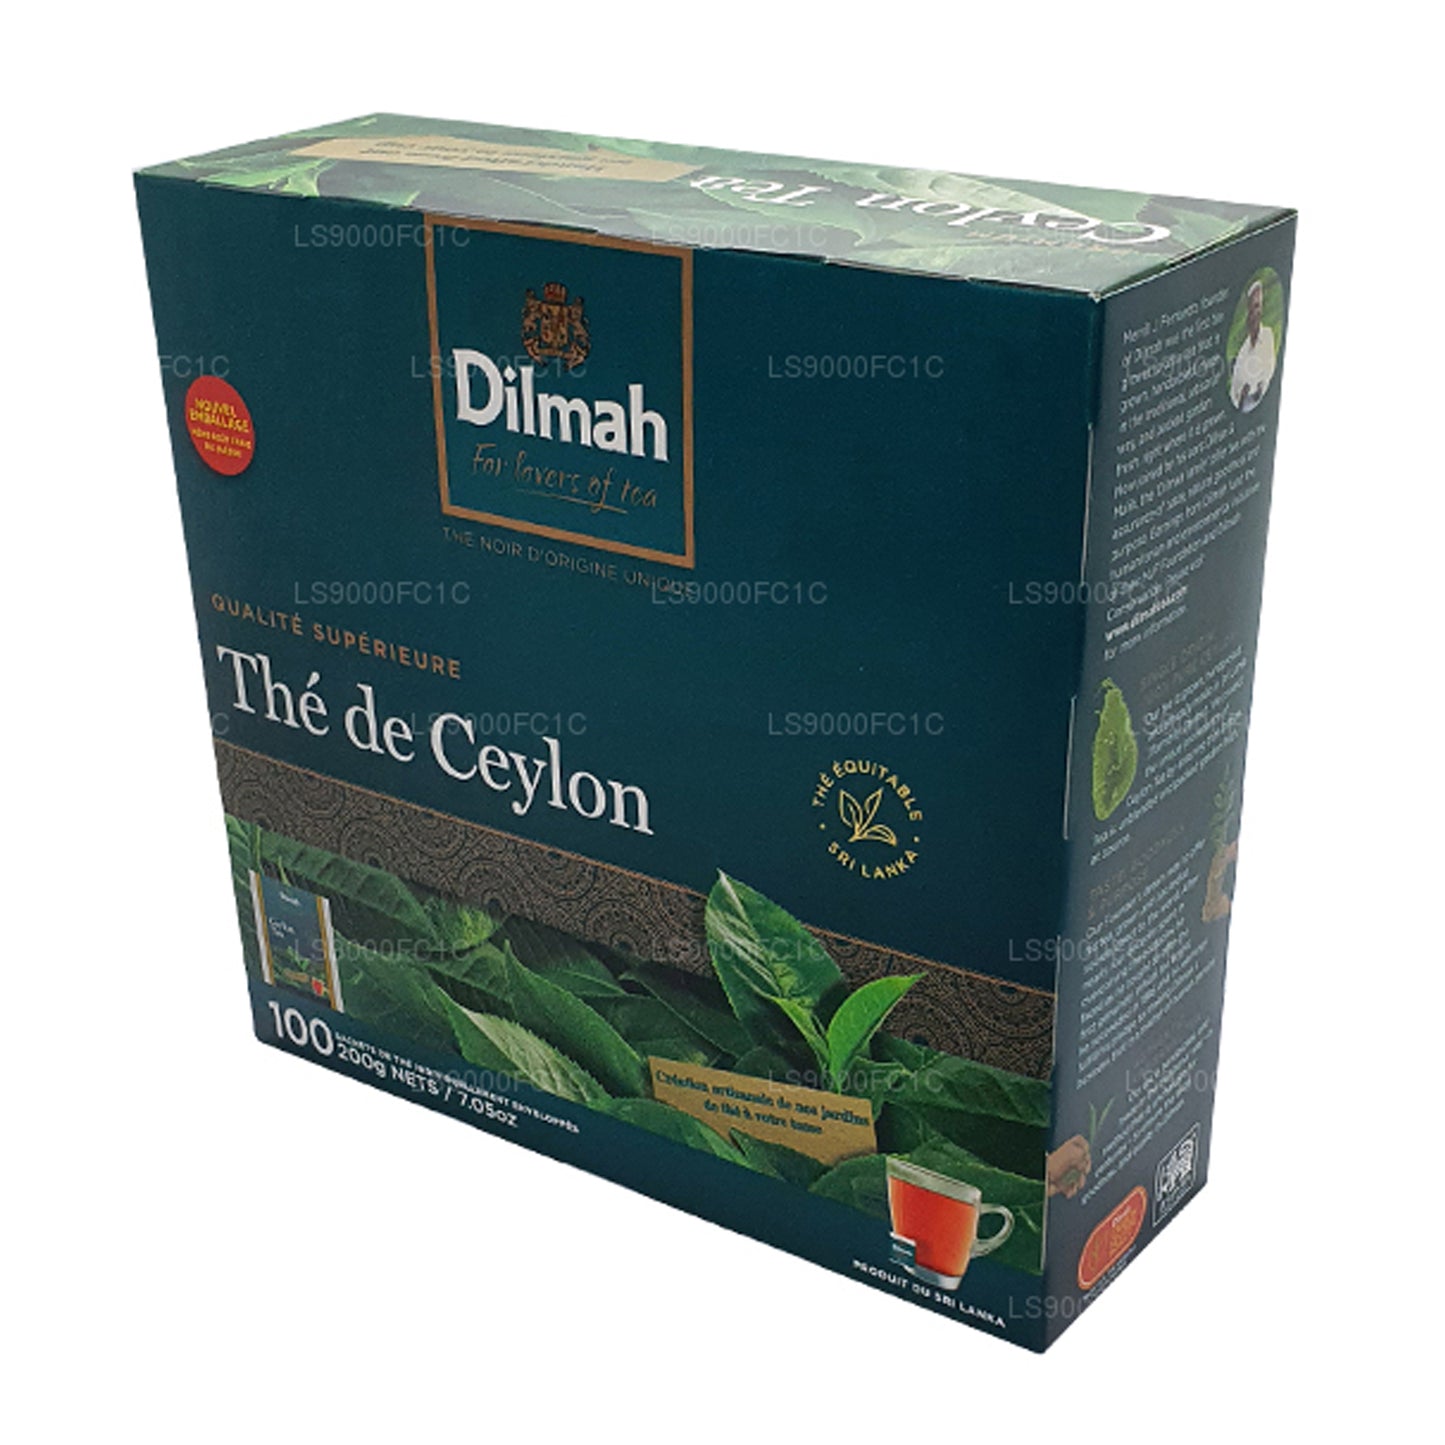 شاي سيلاني فاخر من ديلما، مغلف بشكل فردي، 100 كيس شاي (200 جرام)